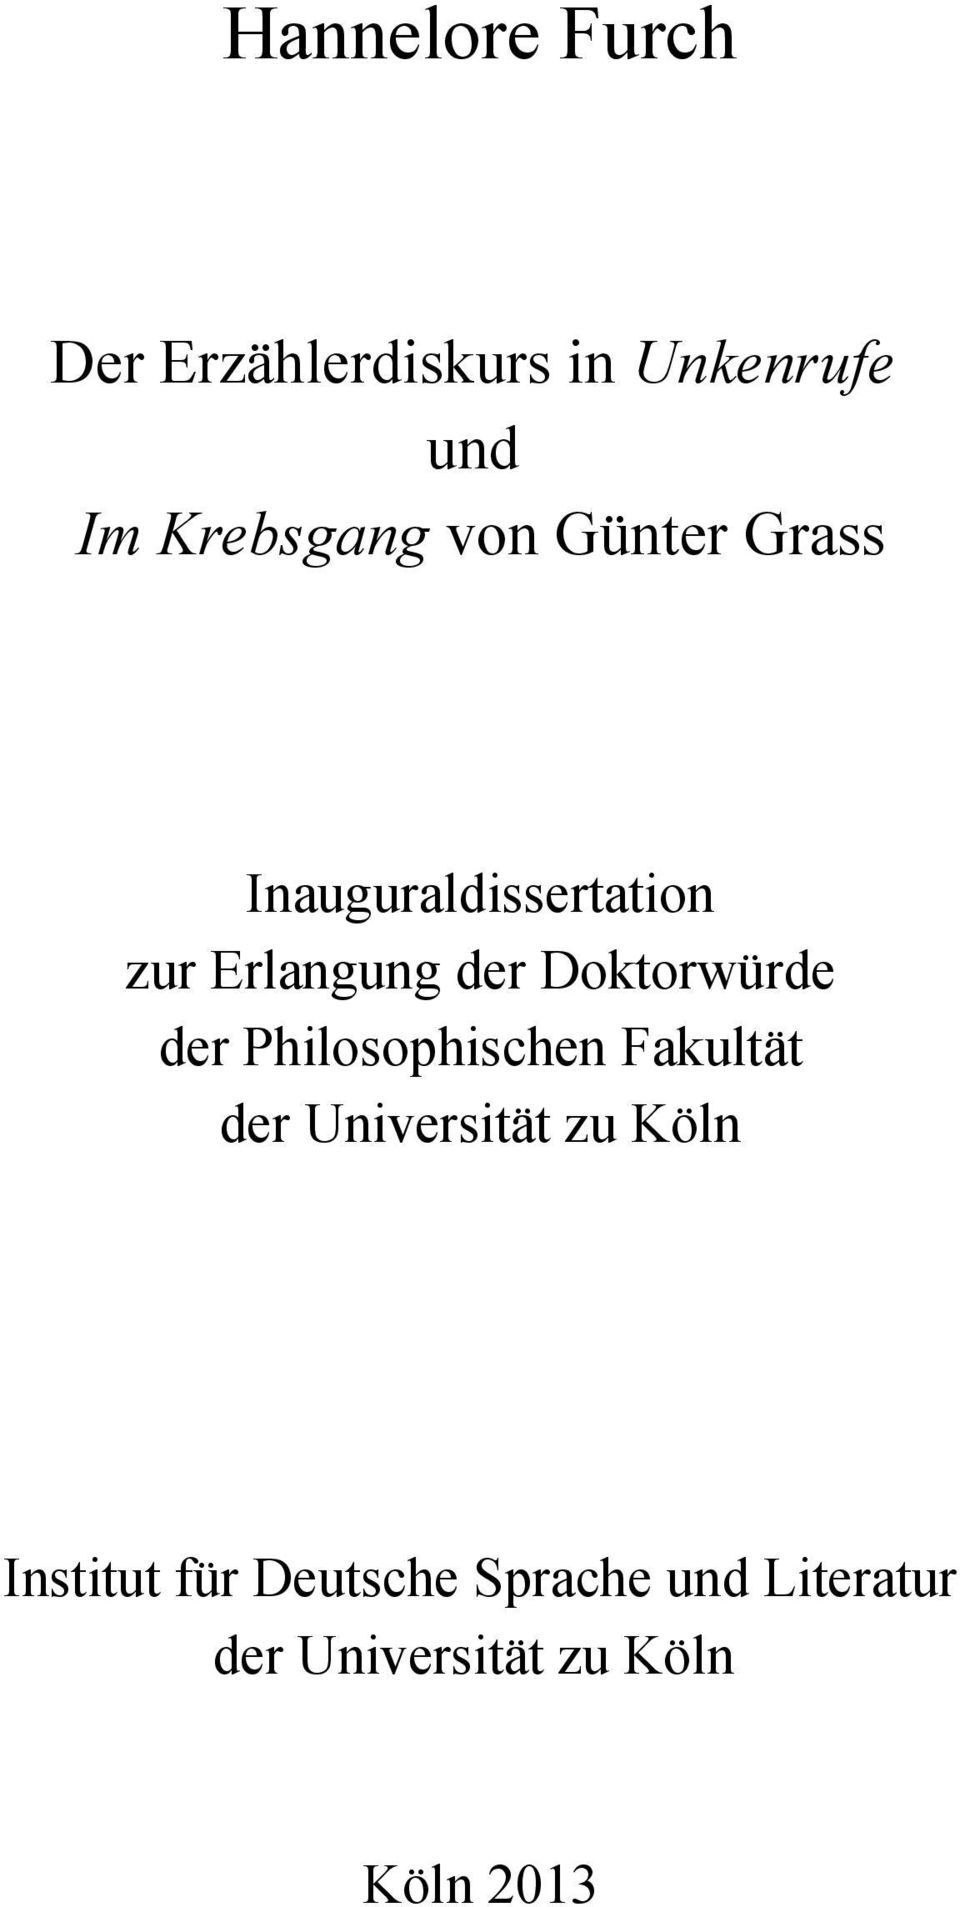 Doktorwürde der Philosophischen Fakultät der Universität zu Köln